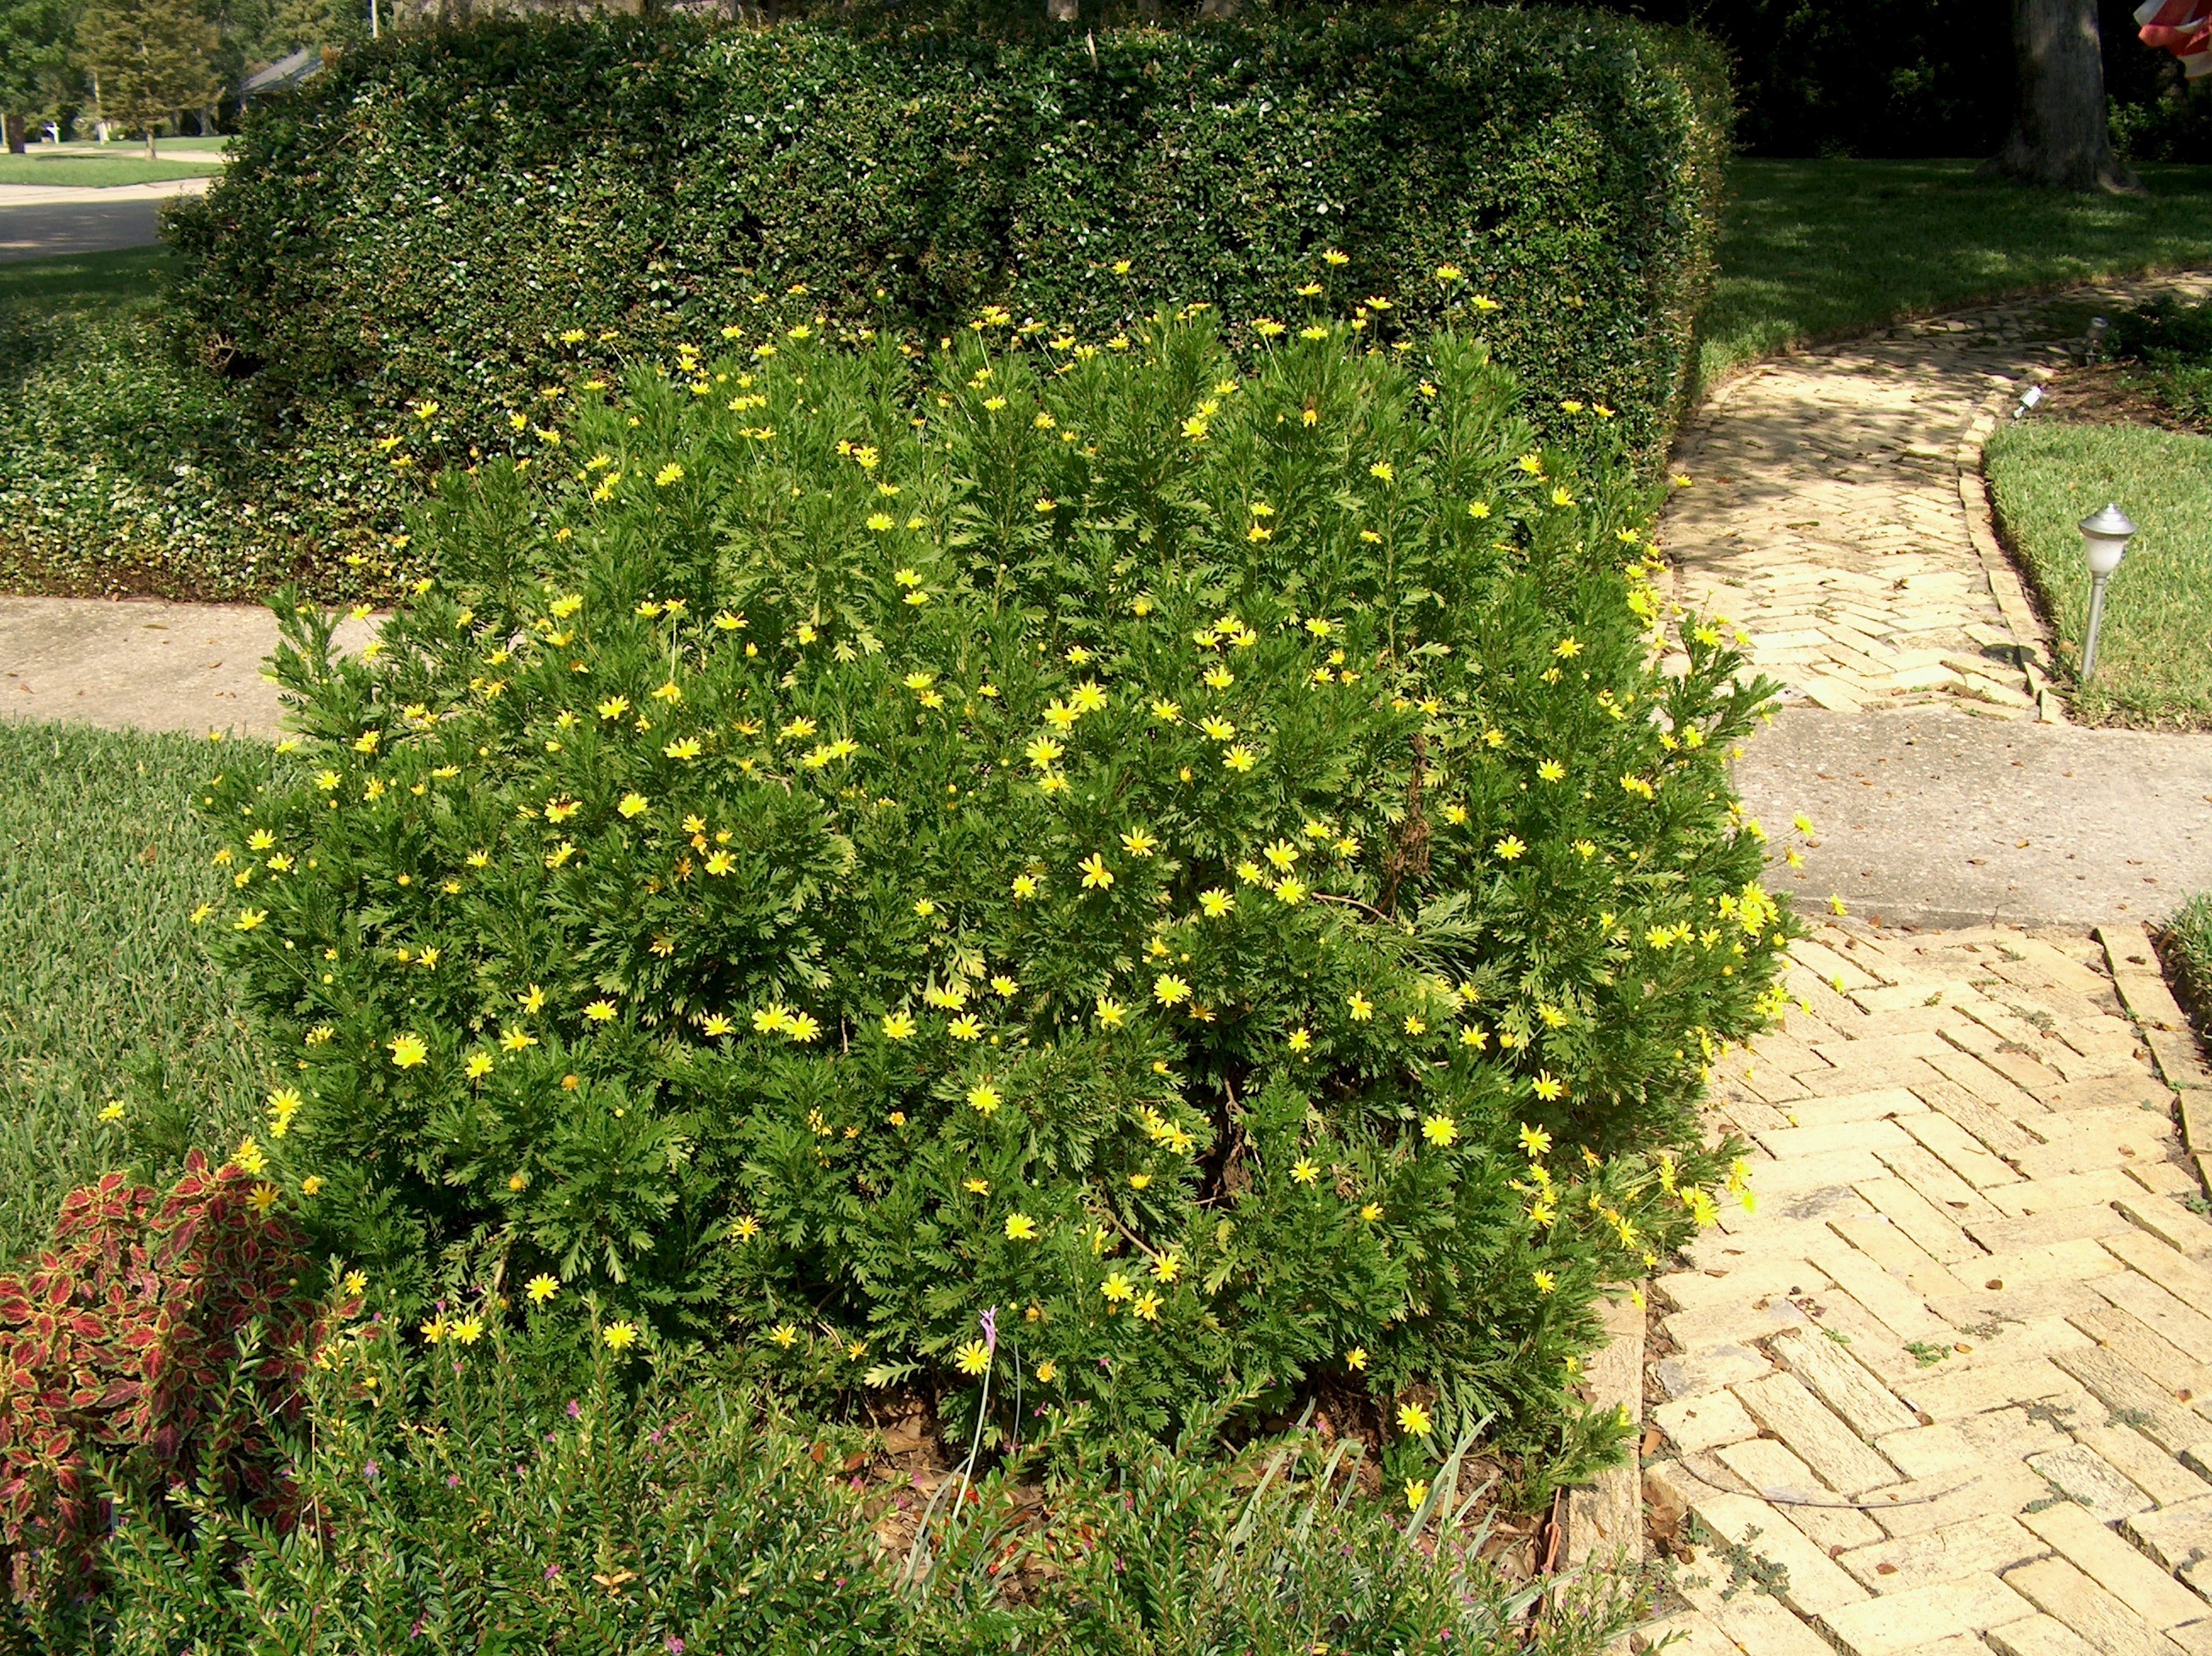 daisy bush